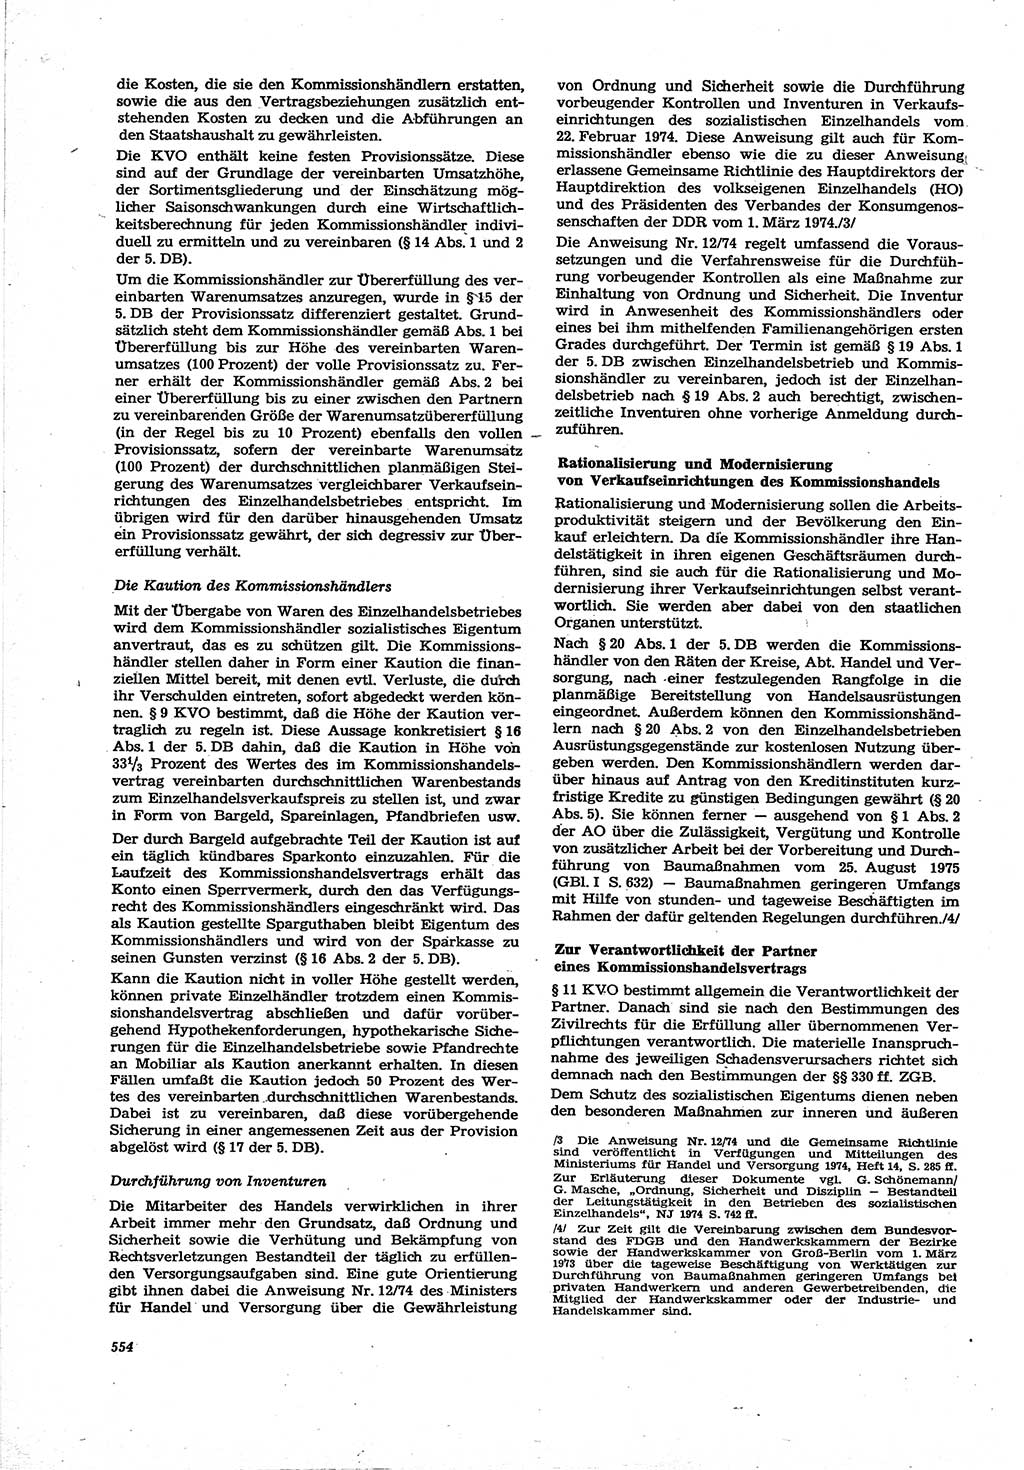 Neue Justiz (NJ), Zeitschrift für Recht und Rechtswissenschaft [Deutsche Demokratische Republik (DDR)], 30. Jahrgang 1976, Seite 554 (NJ DDR 1976, S. 554)